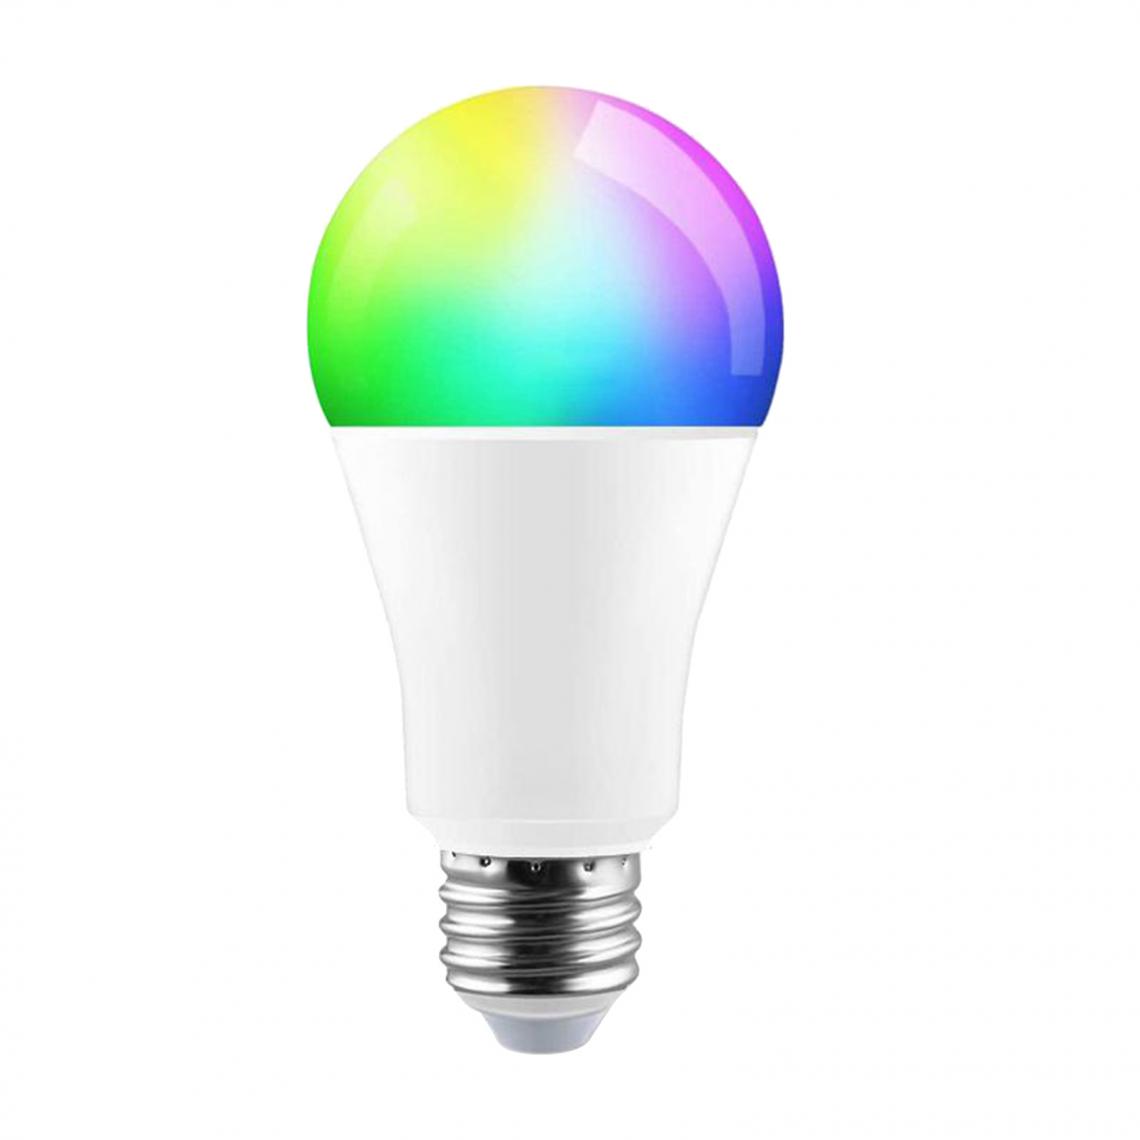 NC - Commande Sans Fil De Téléphone RGBCW Ampoule Minuterie Lampe à Intensité Variable Multicolore E27 - Ampoules LED